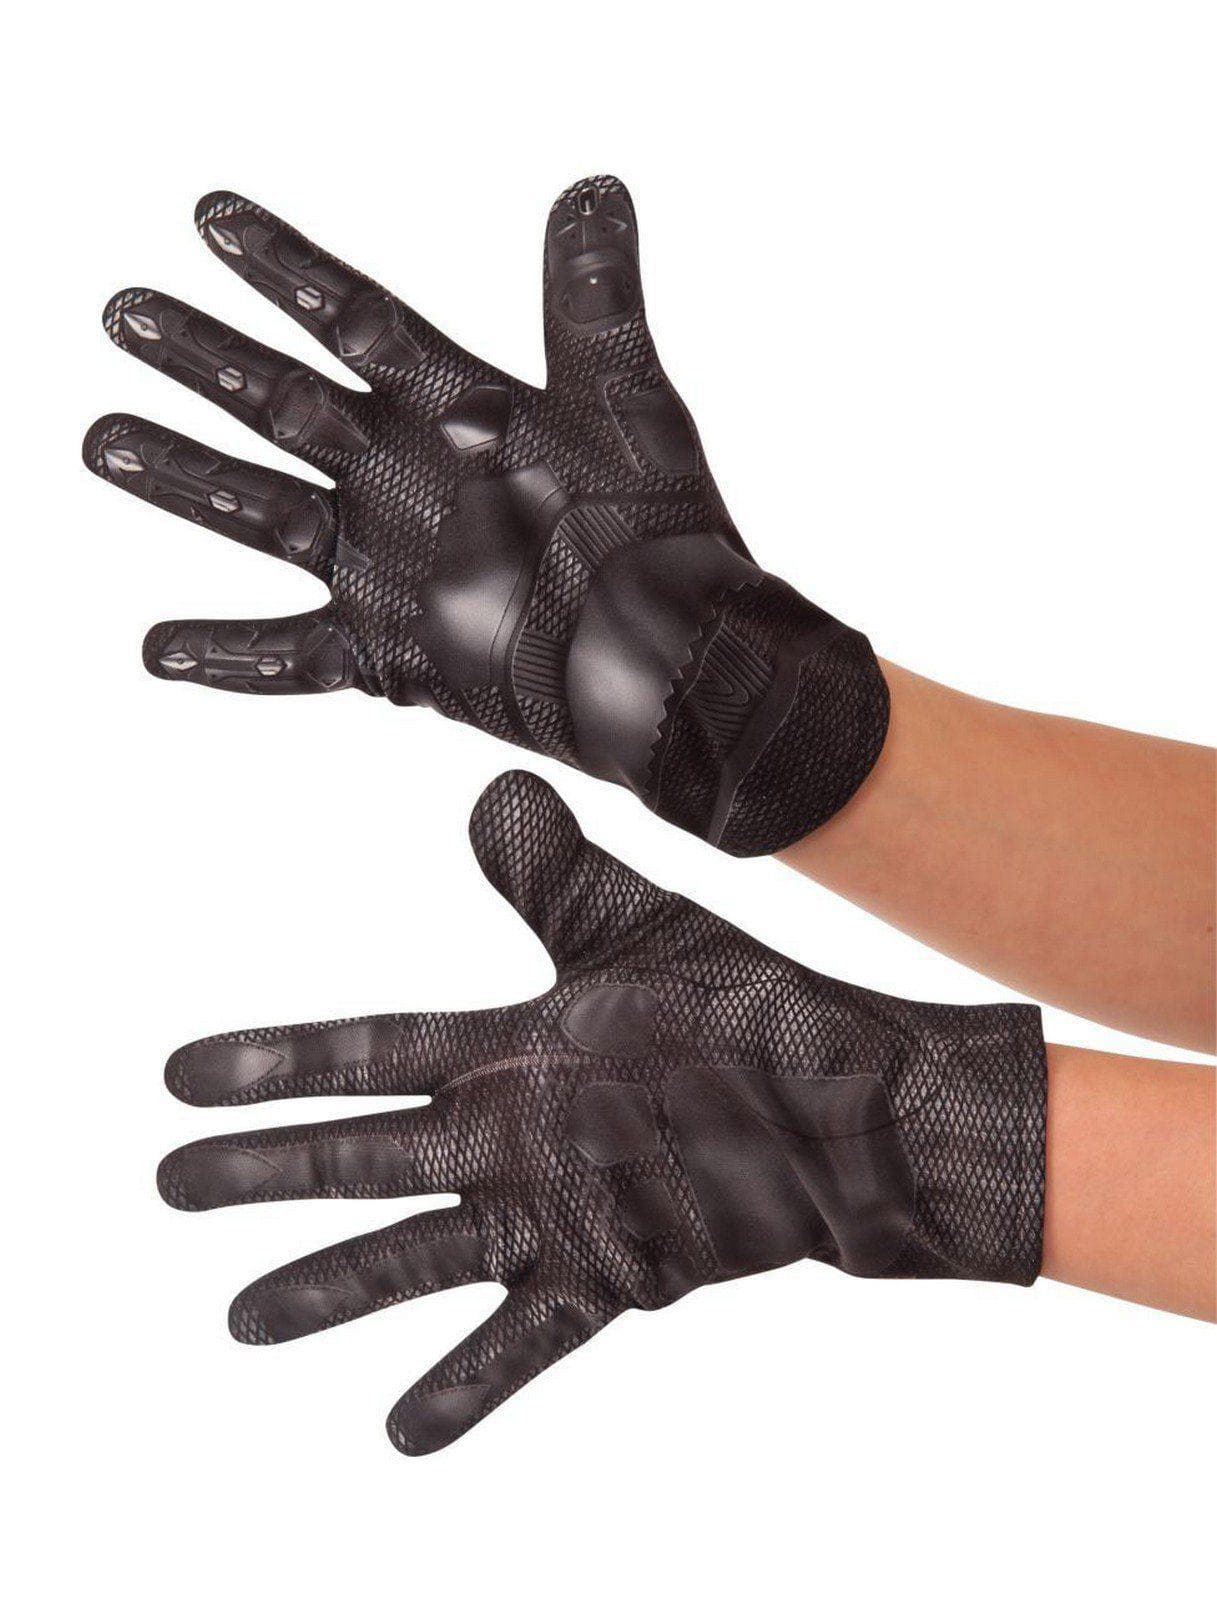 Kids' Marvel Black Panther Gloves - costumes.com